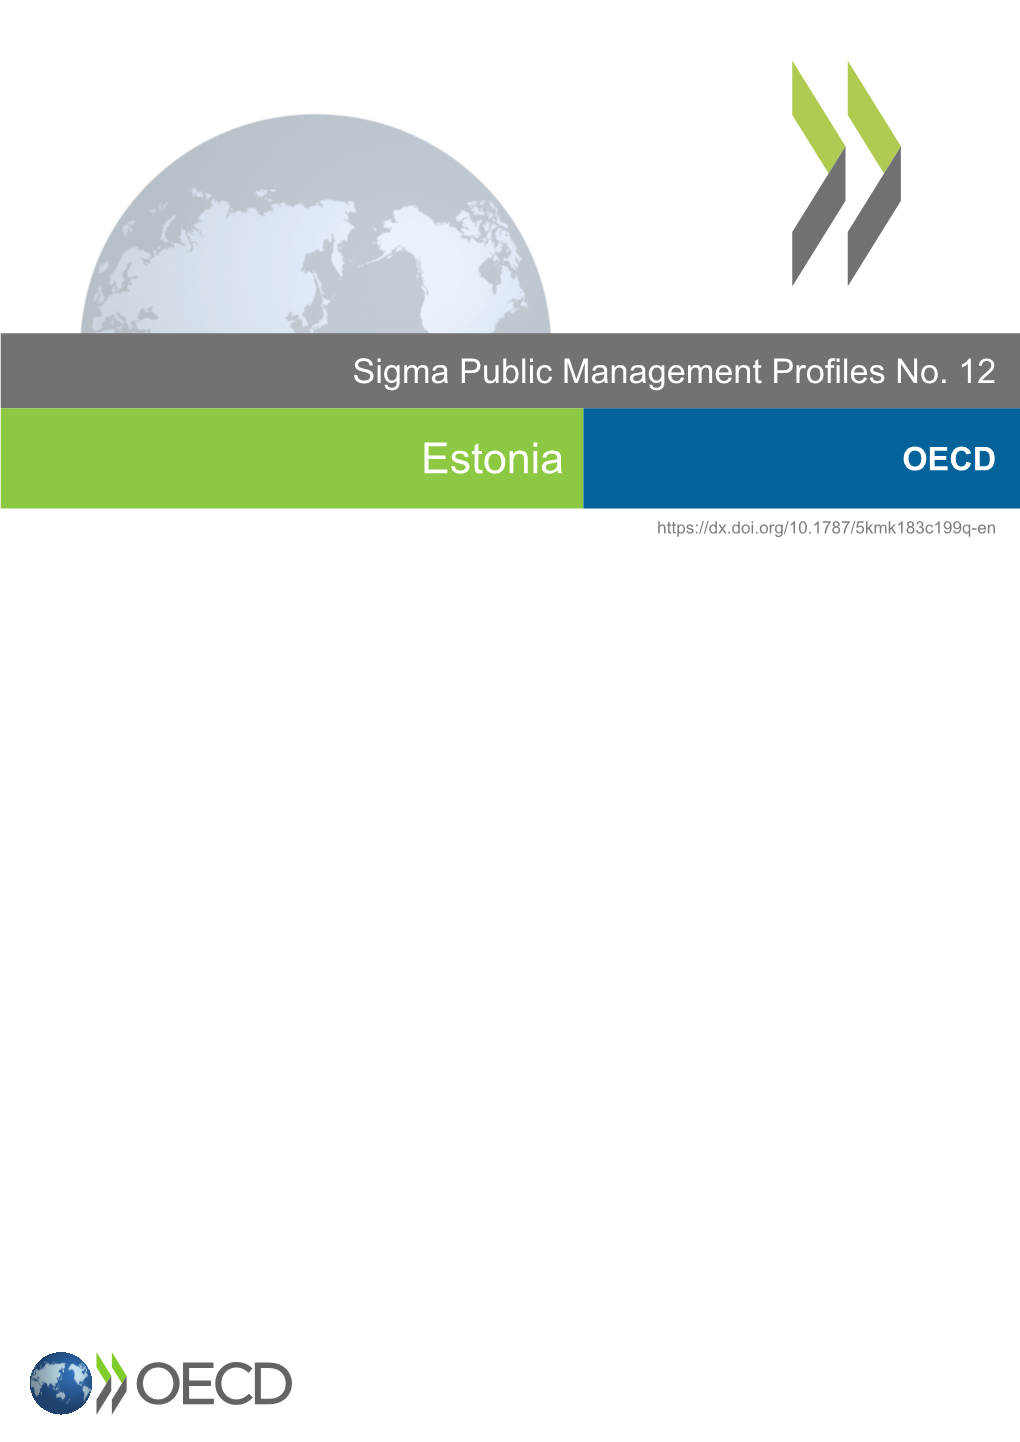 Estonia OECD